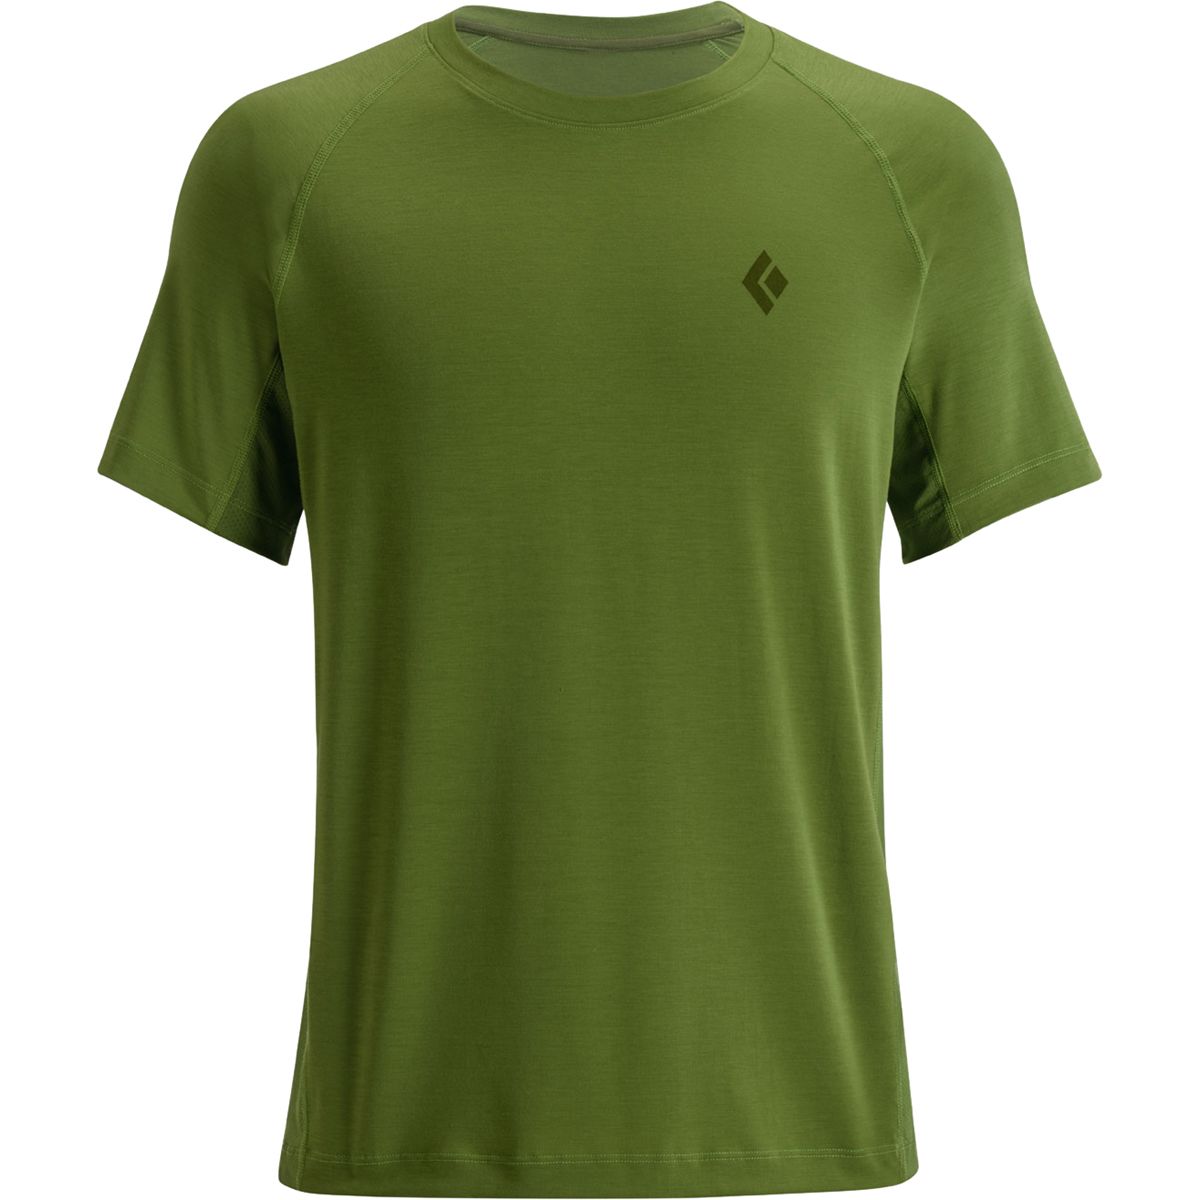 Warbonnet Short-Sleeve T-Shirt - Men